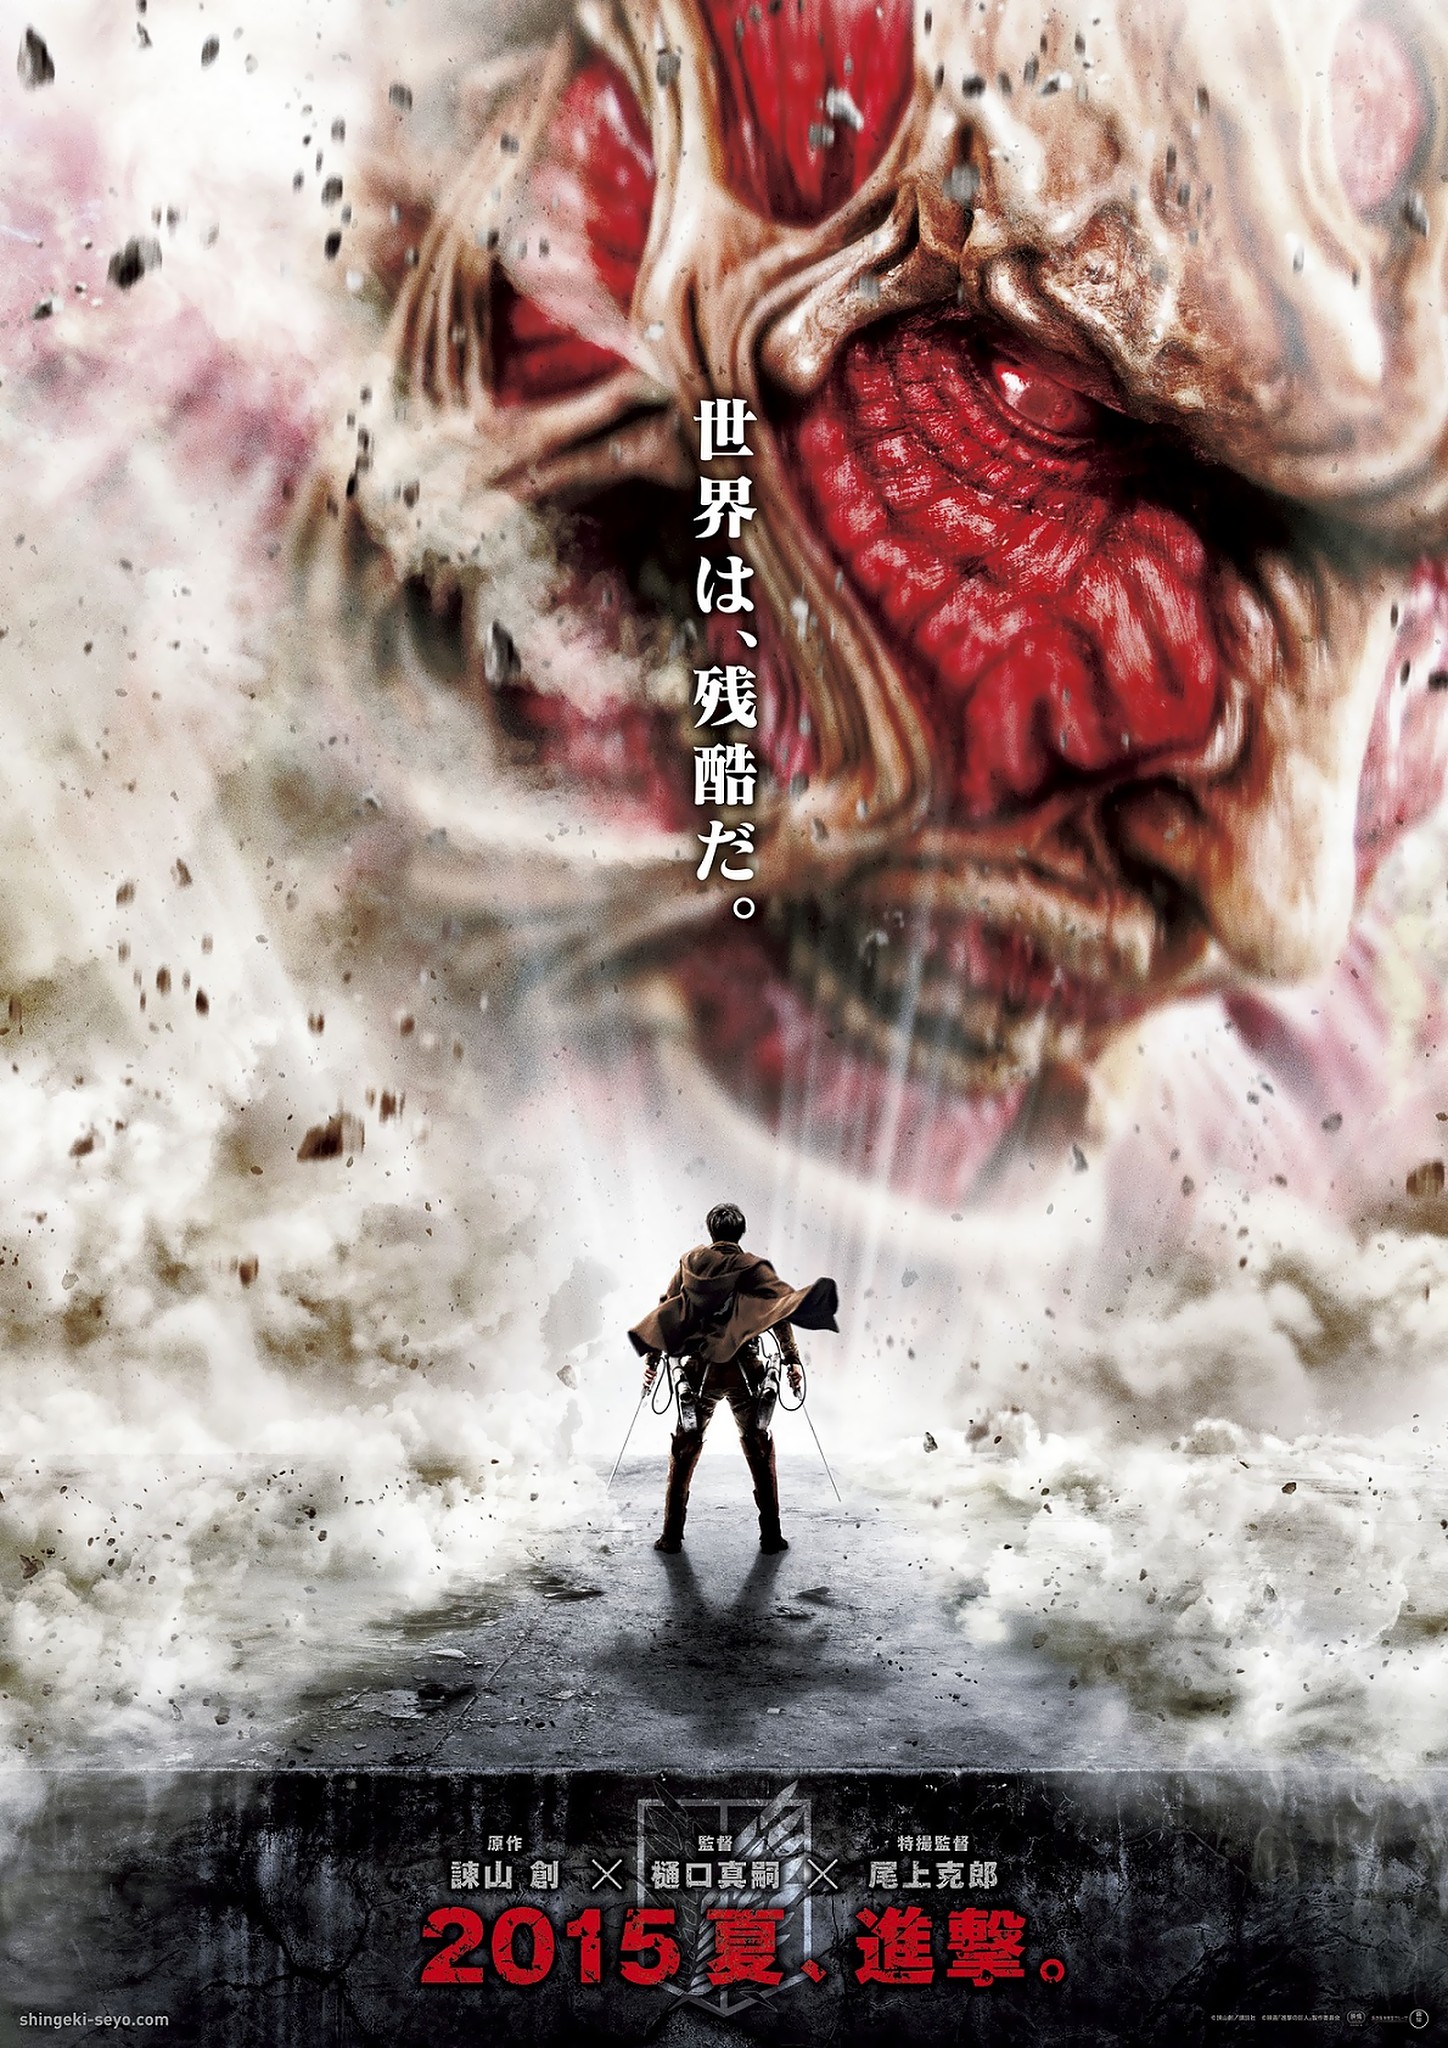 Attack on Titan Roar of Awakening  Official Trailer  YouTube